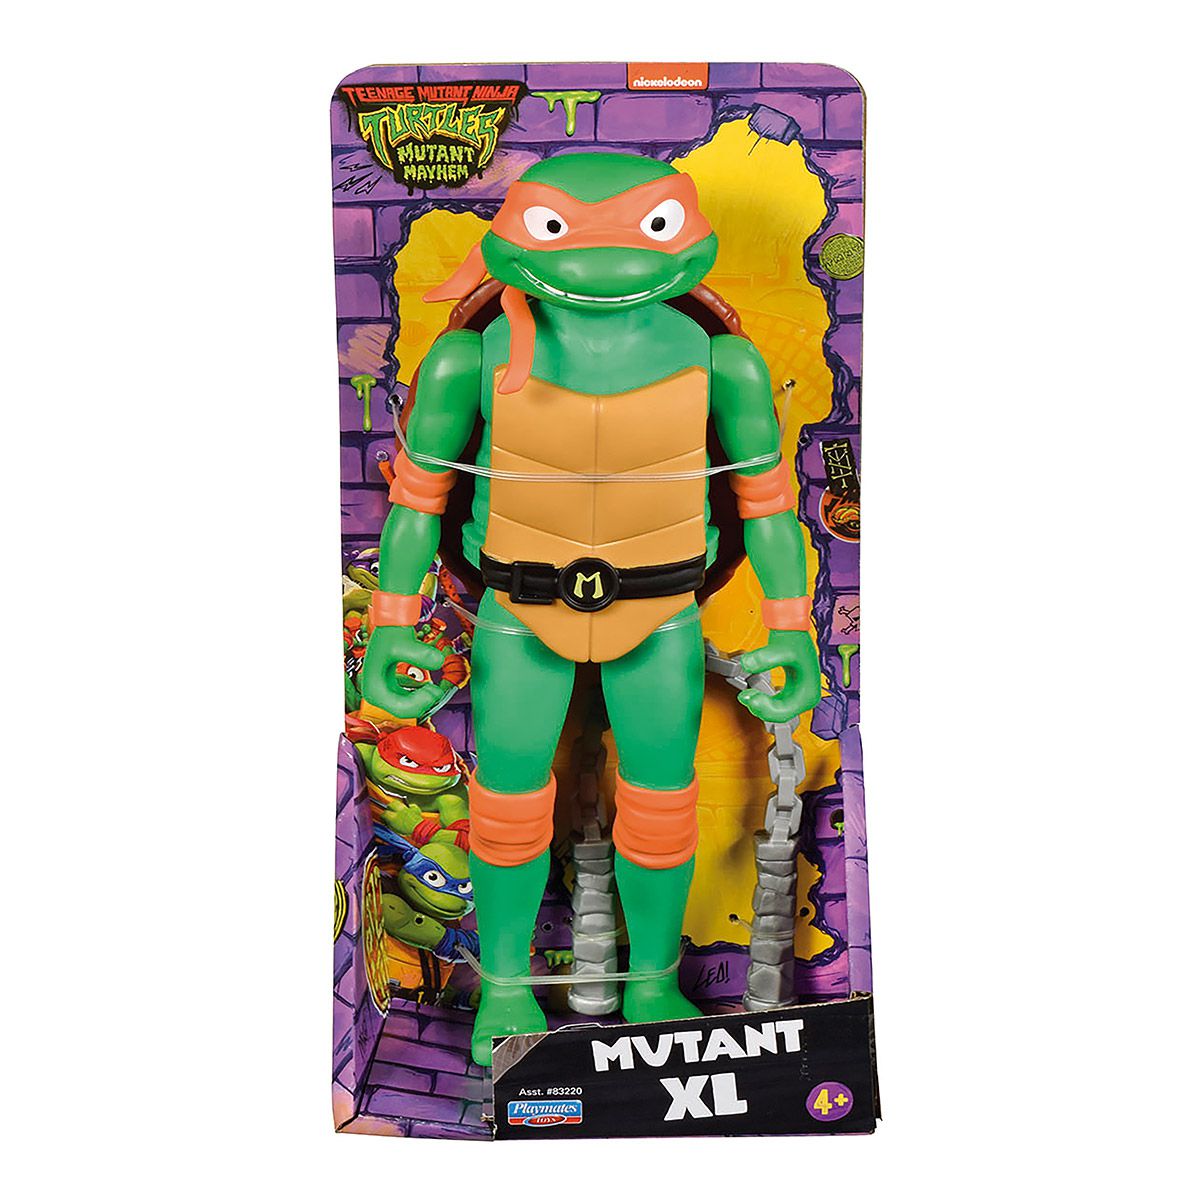 Boneco Tartaruga Ninja Articulado 23 cm - Michelangelo - TRENDS Brinquedos